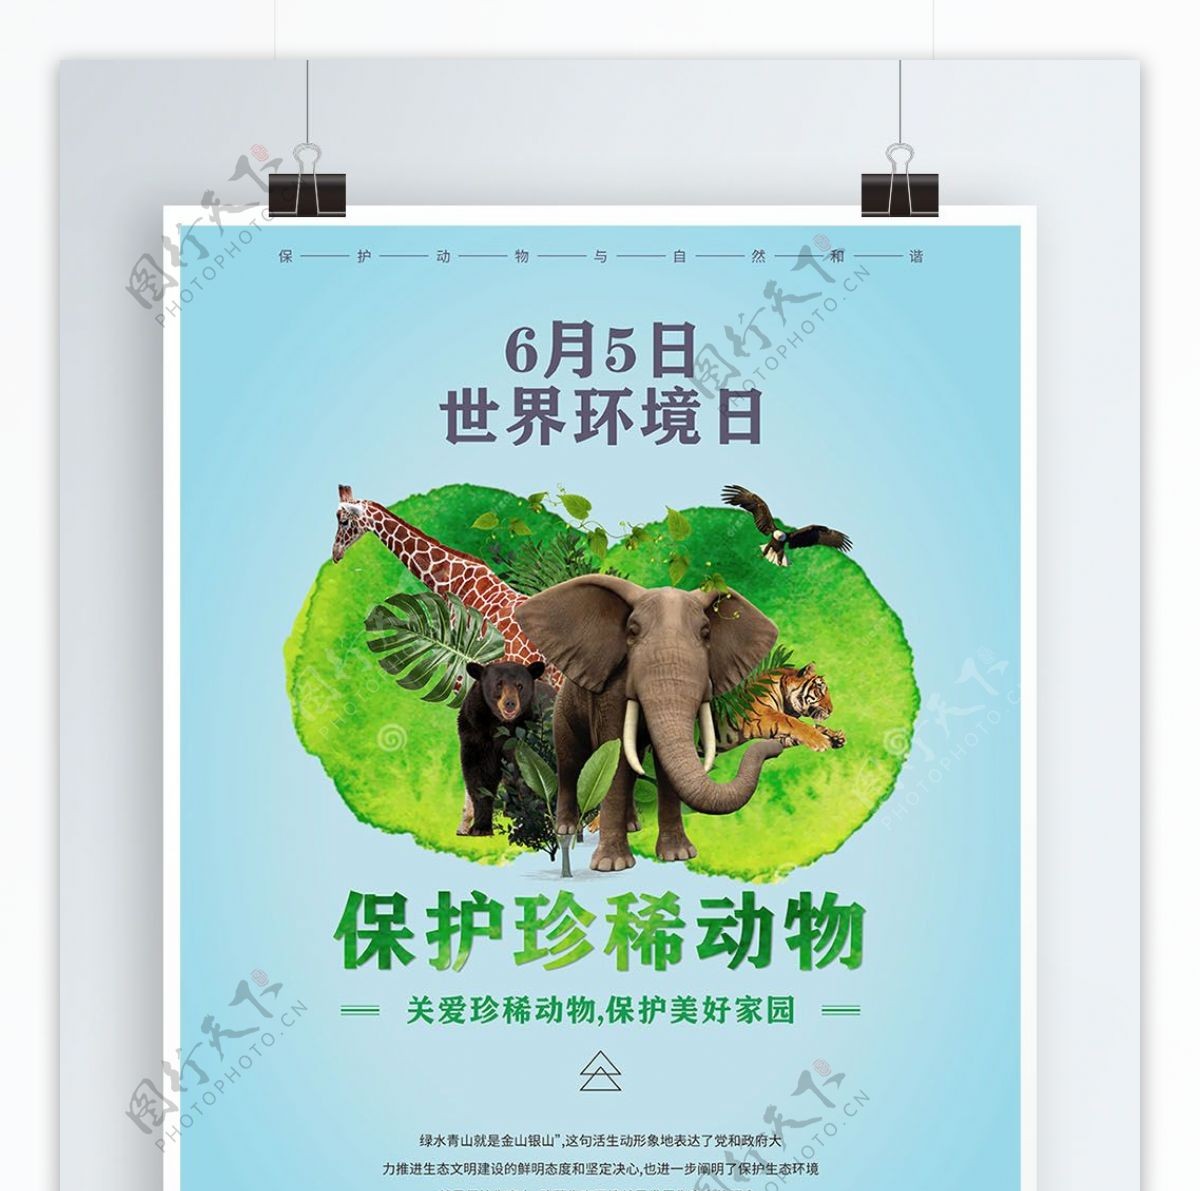 国际珍稀动物保护日海报上传